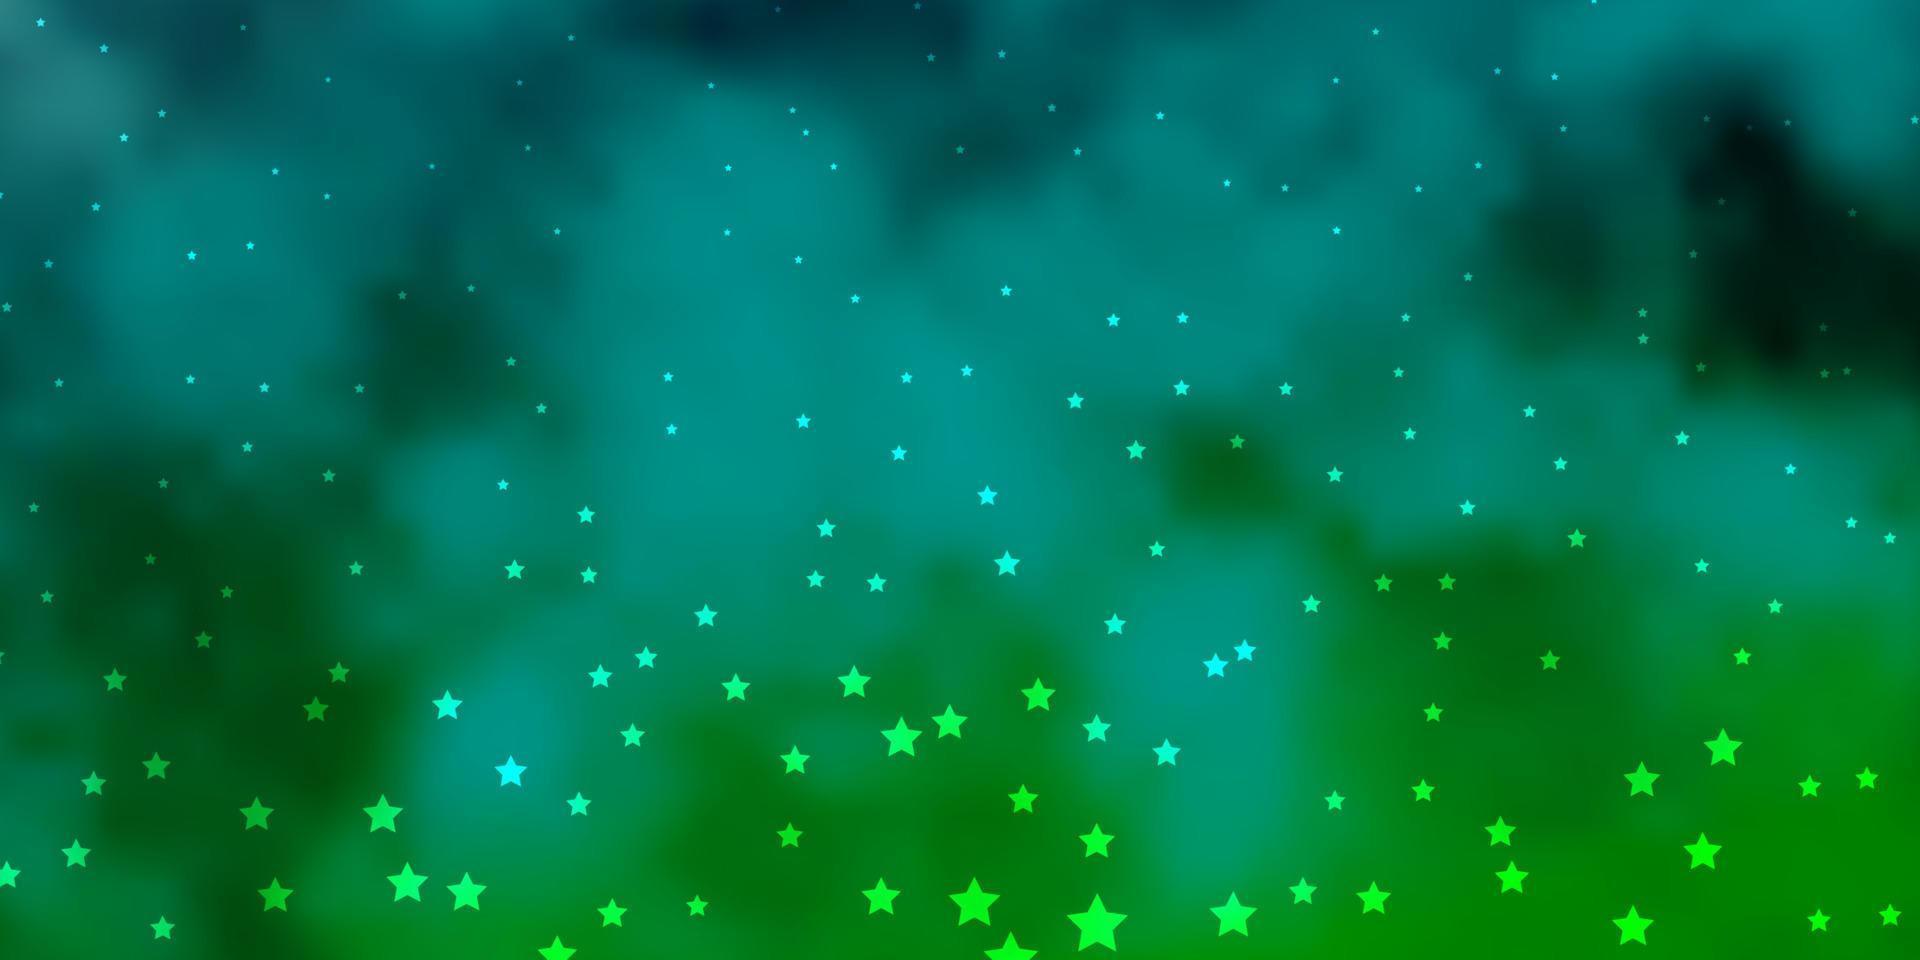 sfondo vettoriale blu scuro, verde con stelle piccole e grandi.